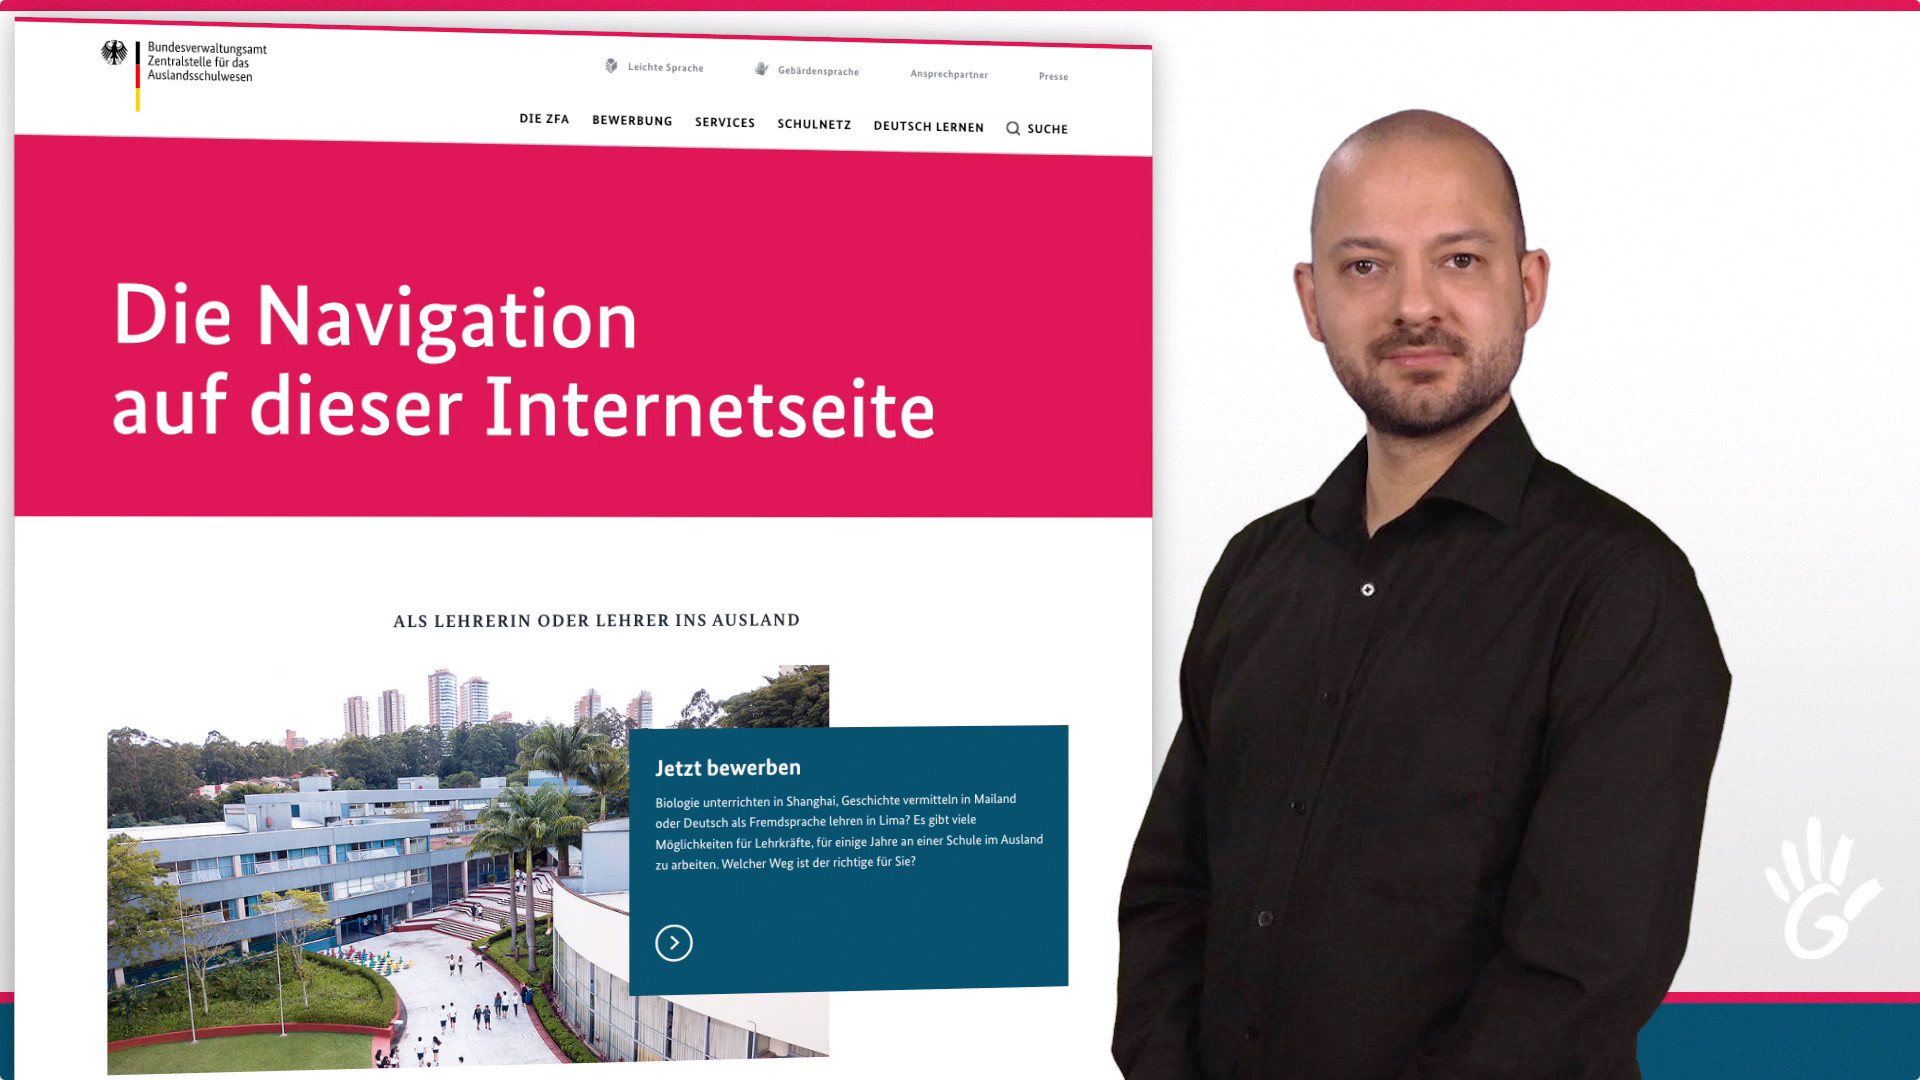 Das Bild zeigt einen Mann vor einem weißen Hintergrund mit der Startseite der Website der ZfA